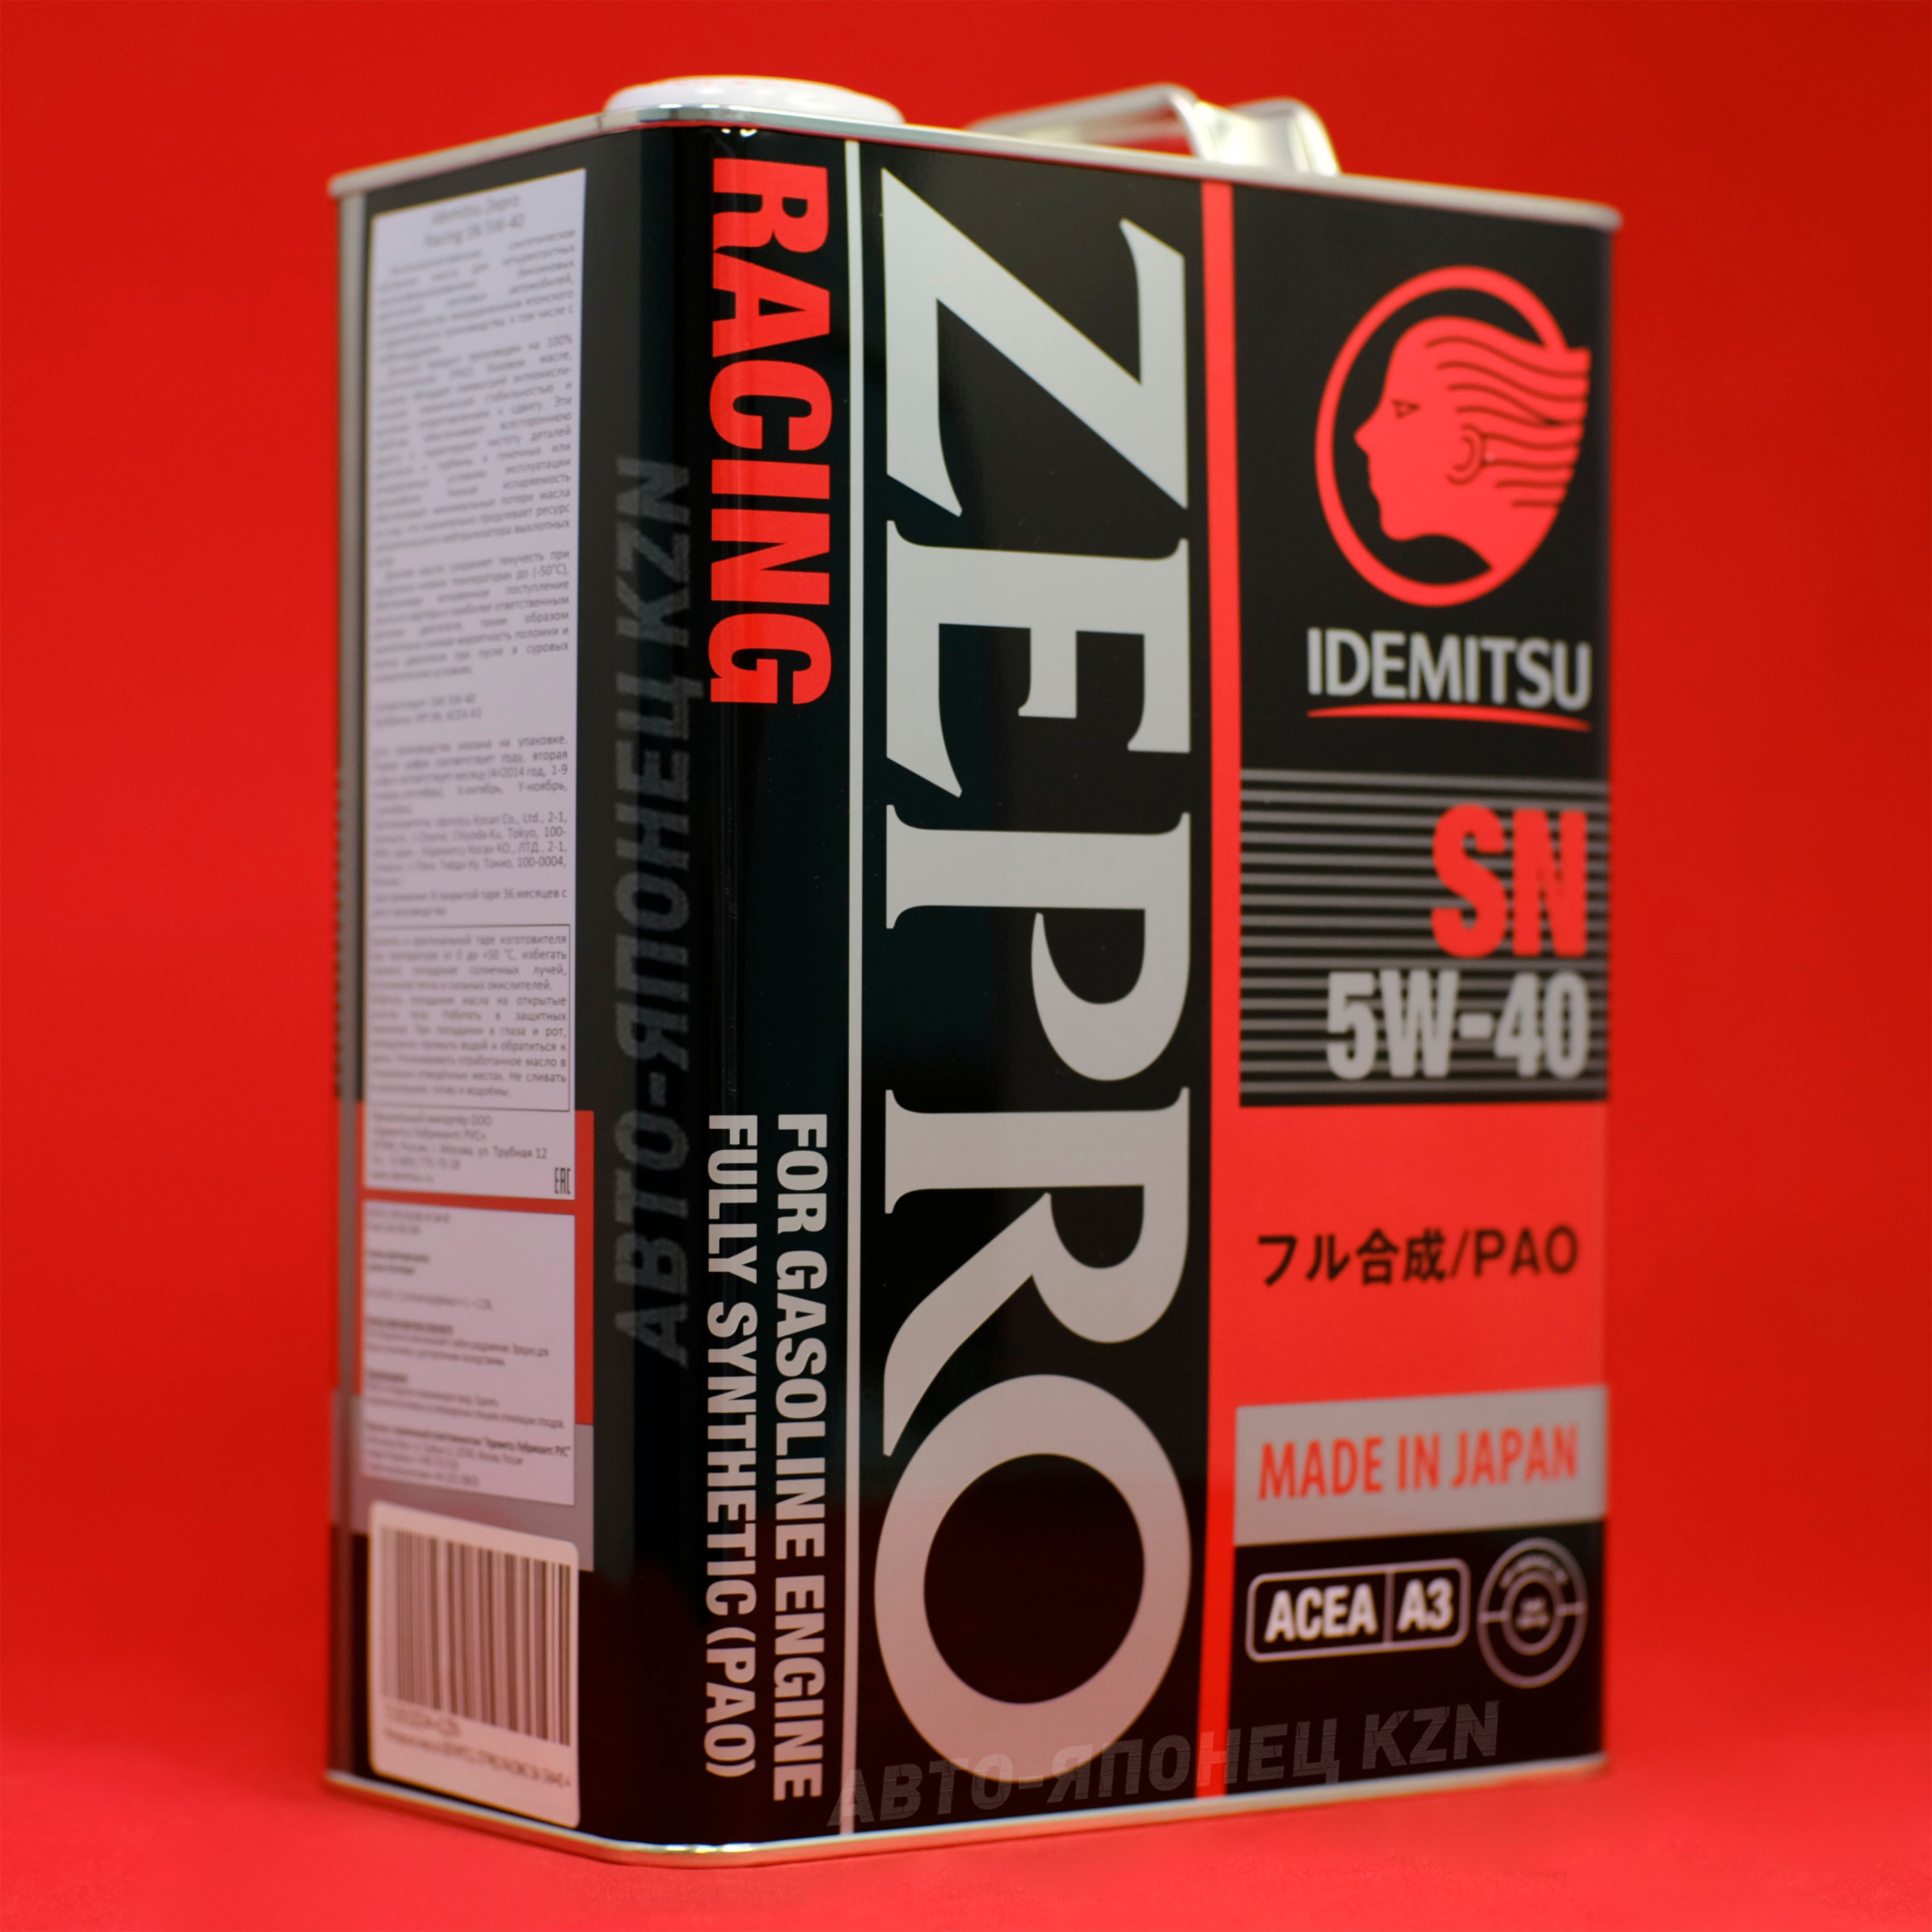 Масло идемитсу 5w40 отзывы. Idemitsu Zepro Euro. Масло зепро 5w40 отзывы. Idemitsu Zepro Euro 5w-40 реклама.